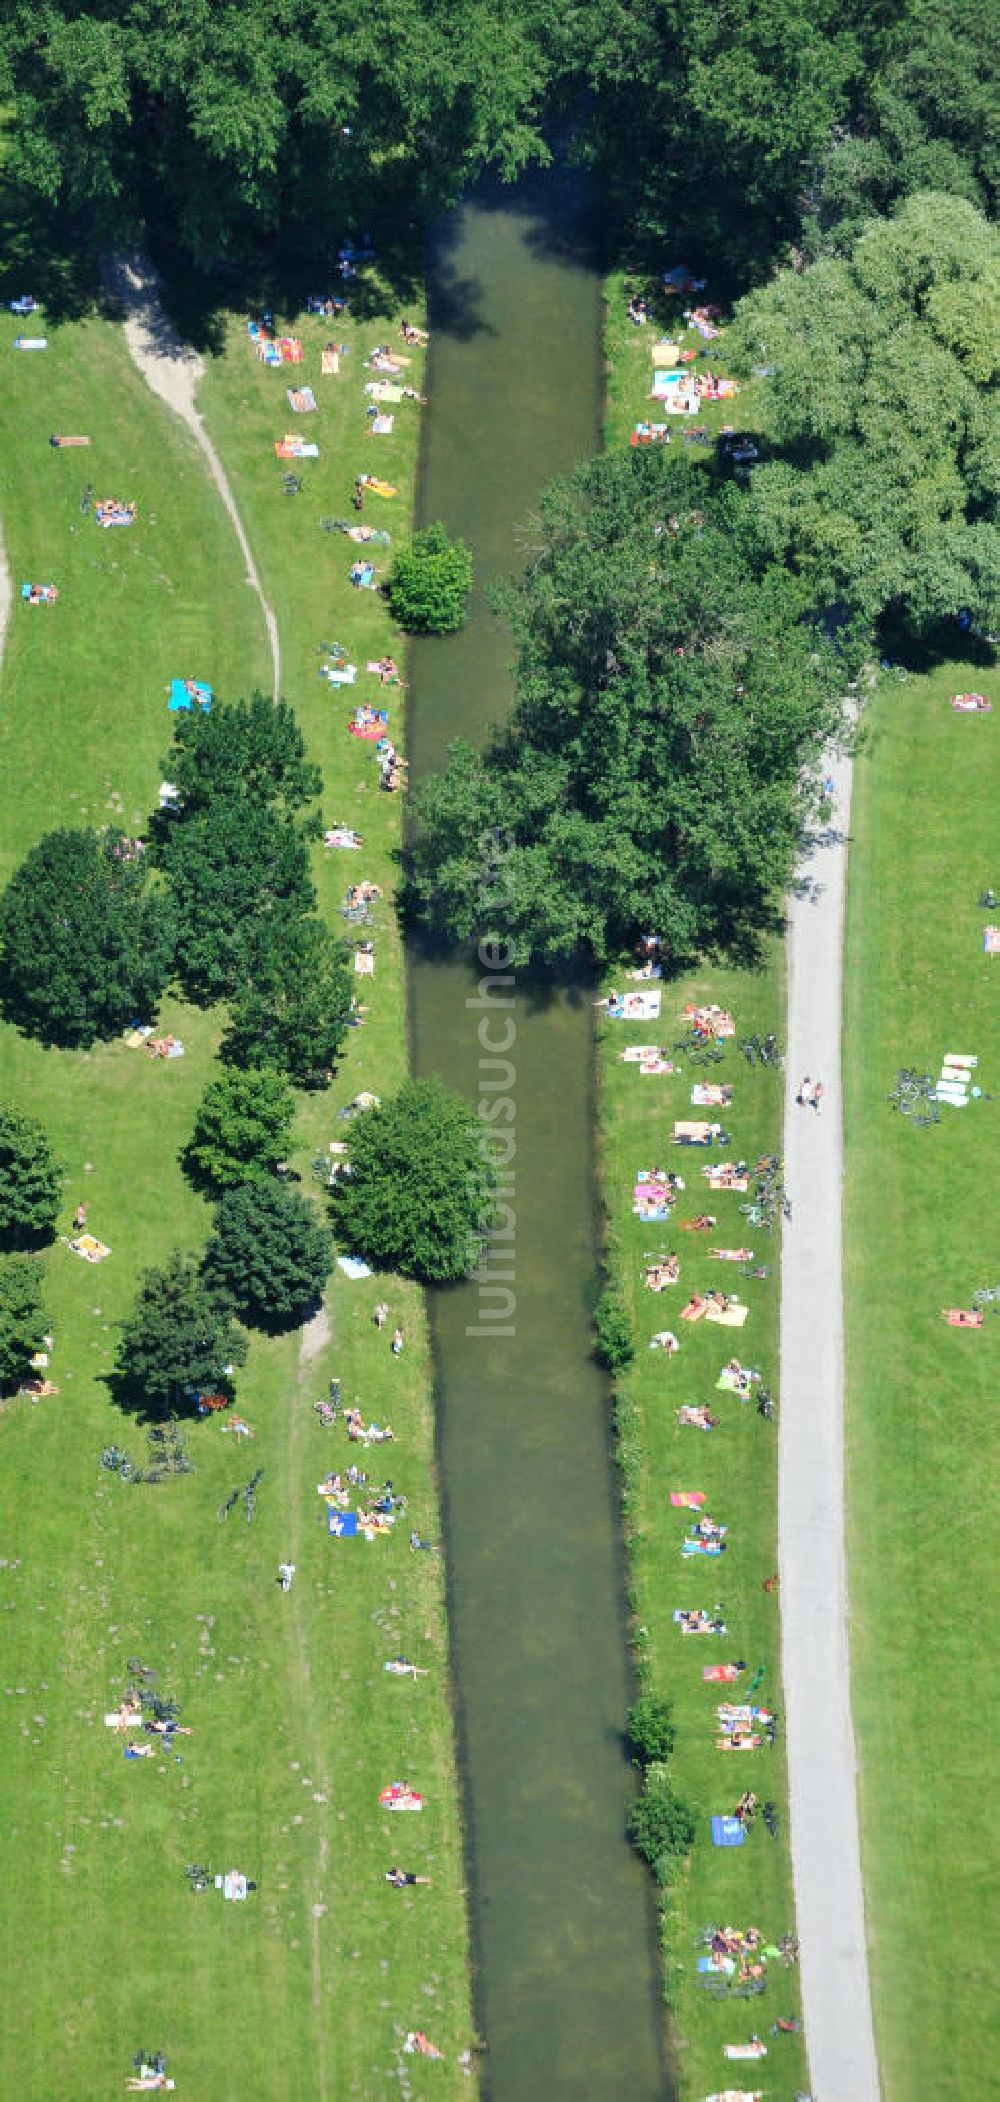 Luftbild München - Erholungspark Englischer Garten in München